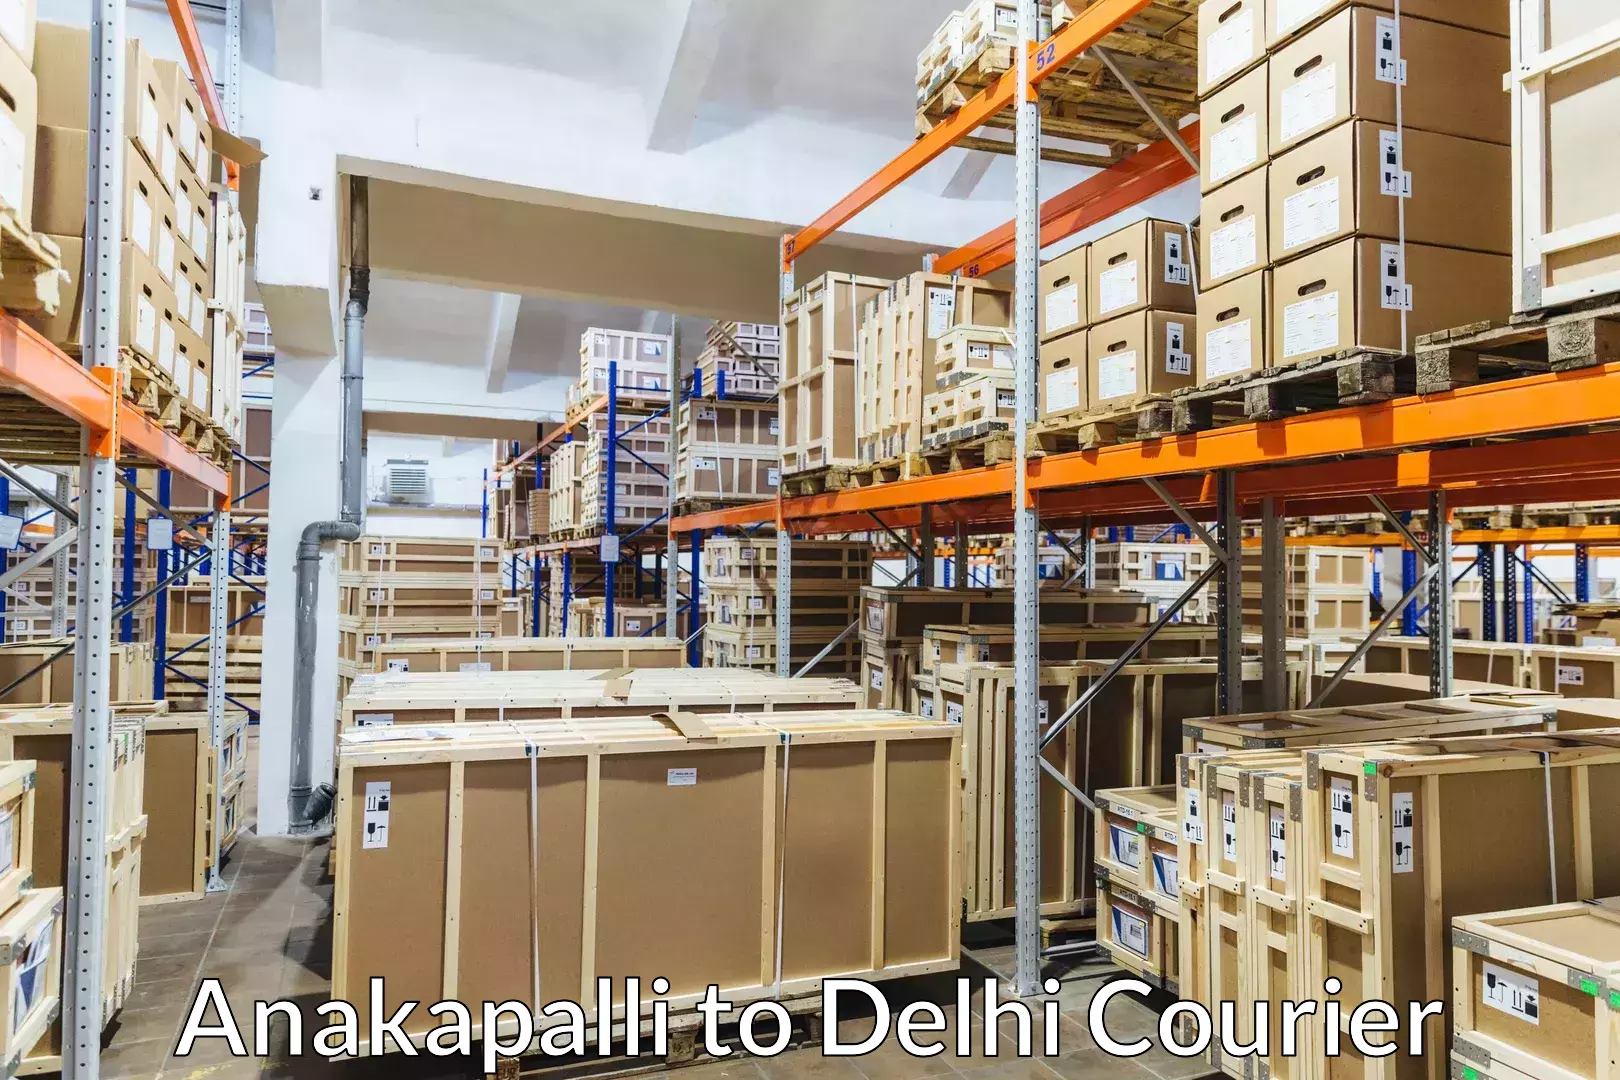 Local furniture movers Anakapalli to Jawaharlal Nehru University New Delhi